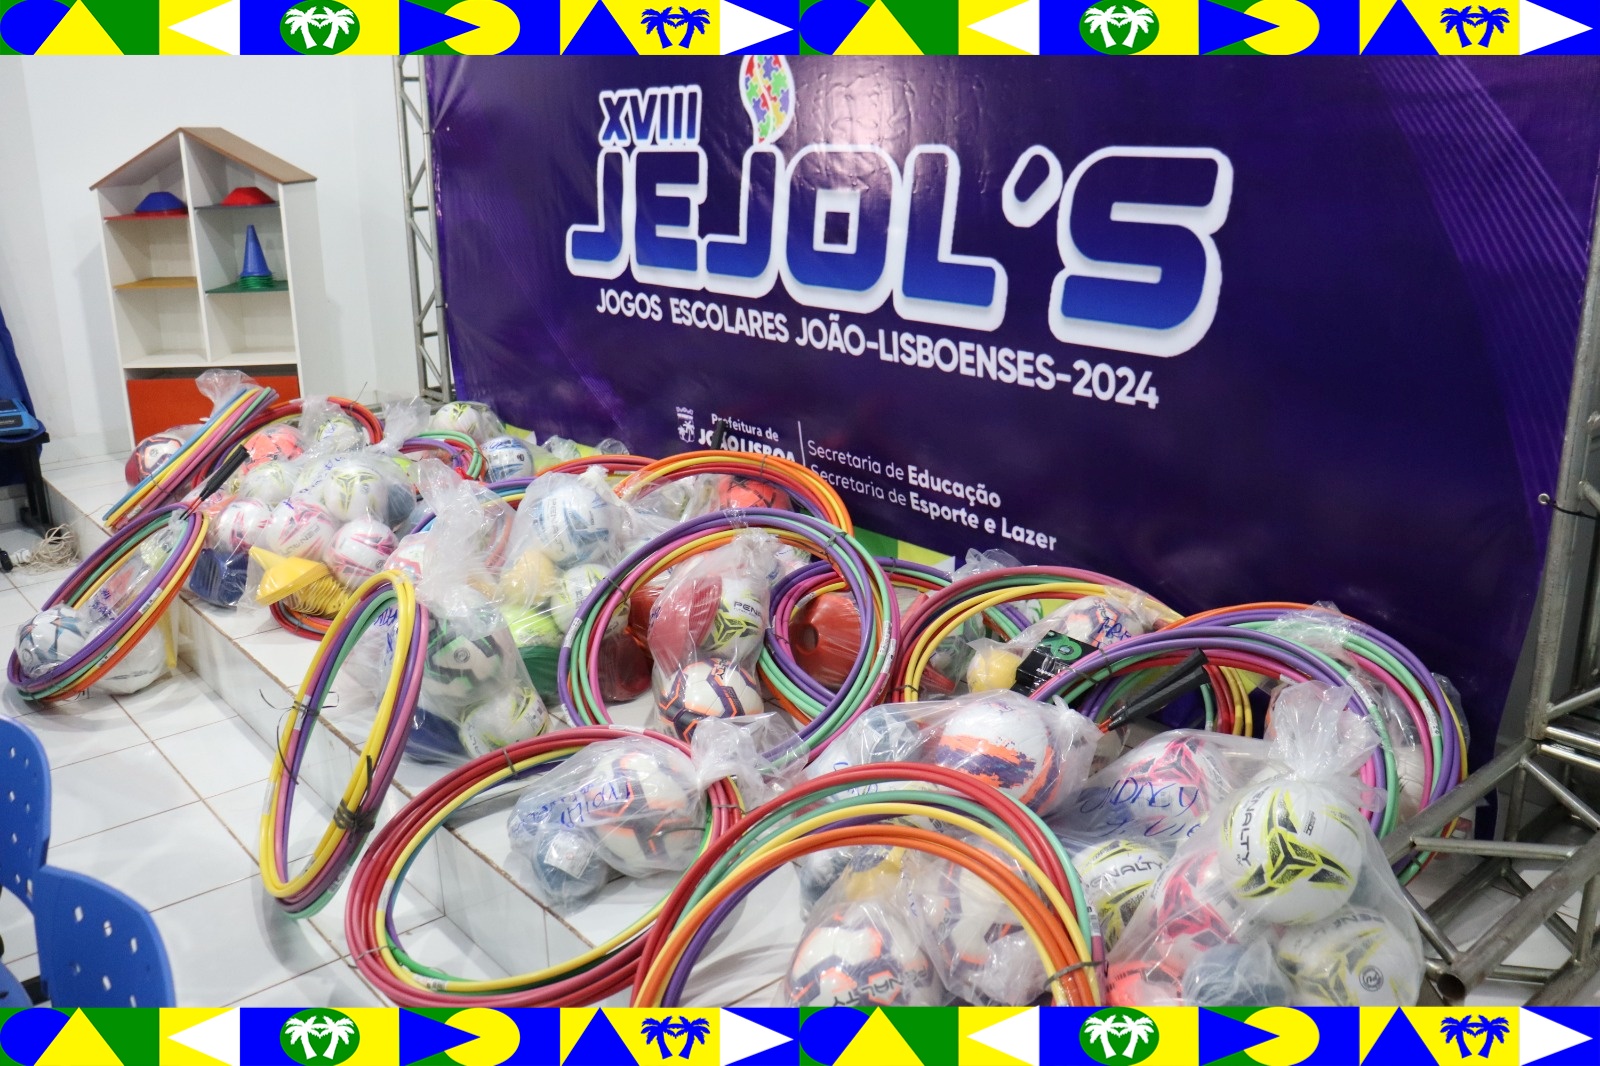 Entrega de Kits Esportivos Inicia JEJOL's 2024 com Compromisso e Dedicação